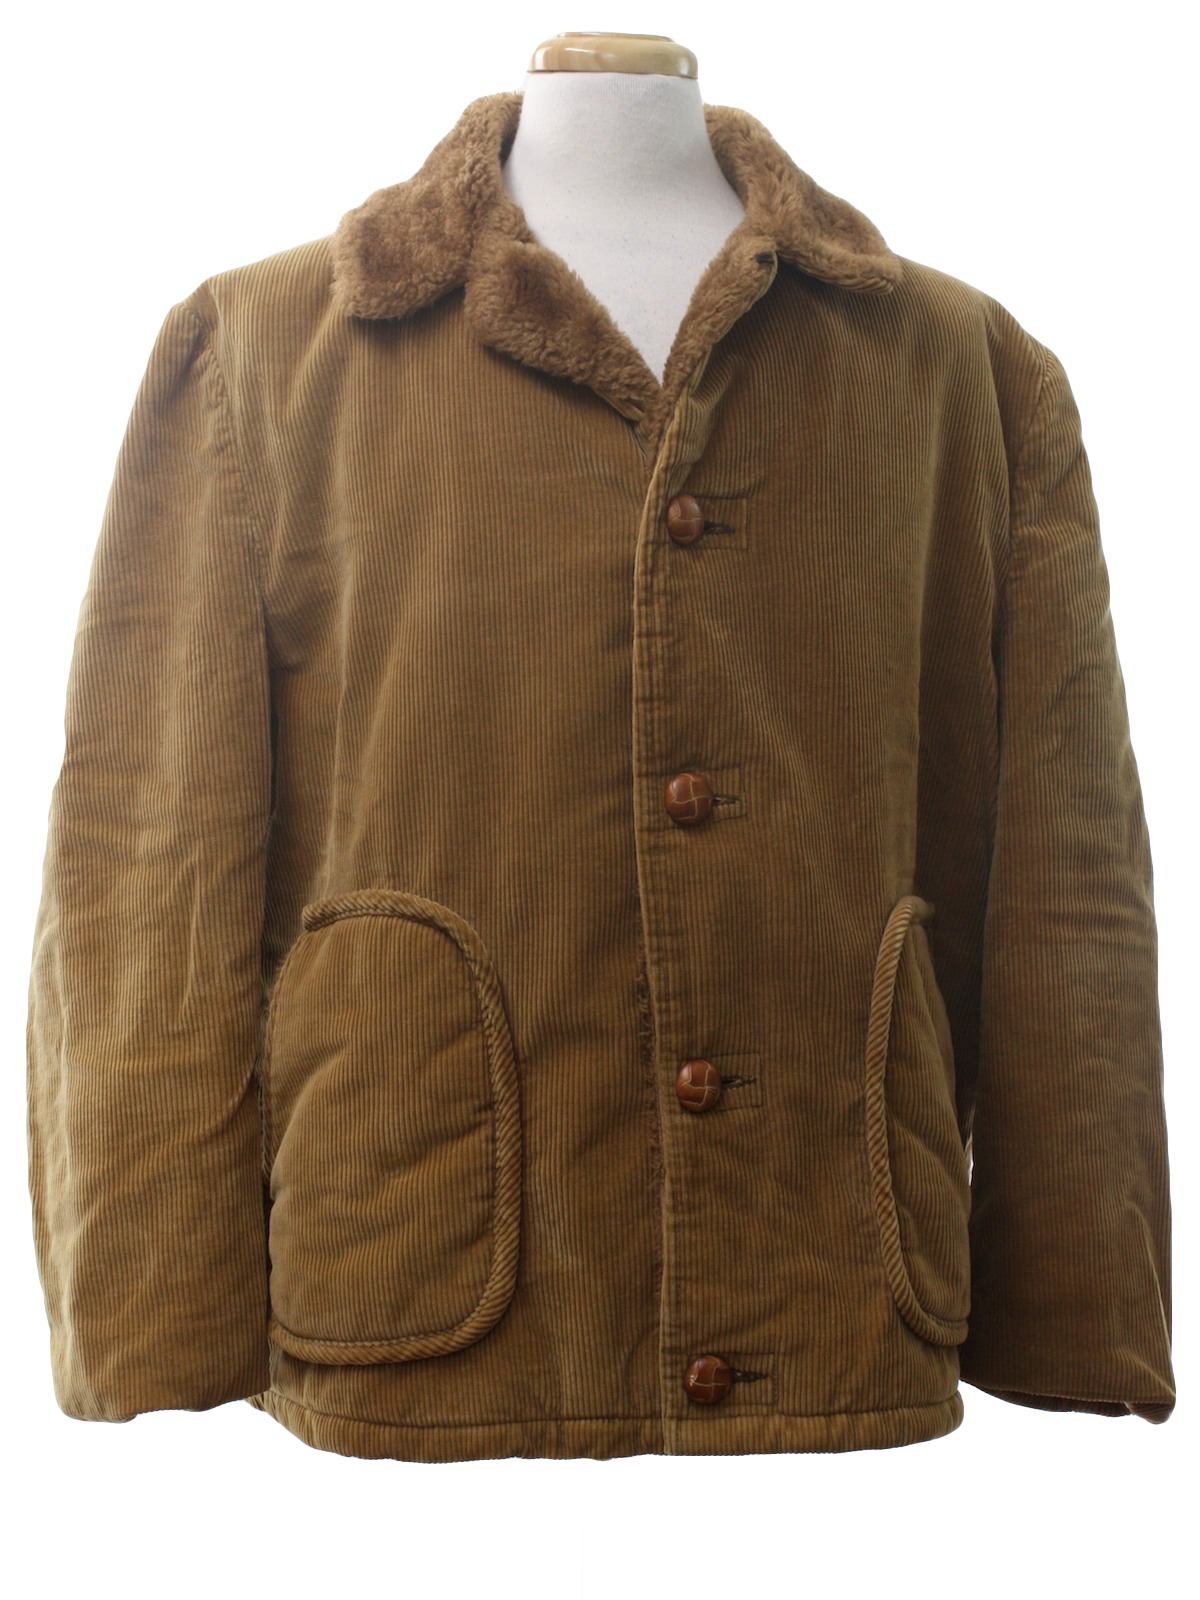 Vintage Towncraft 70's Jacket: 70s -Towncraft- Mens tan cotton blend ...